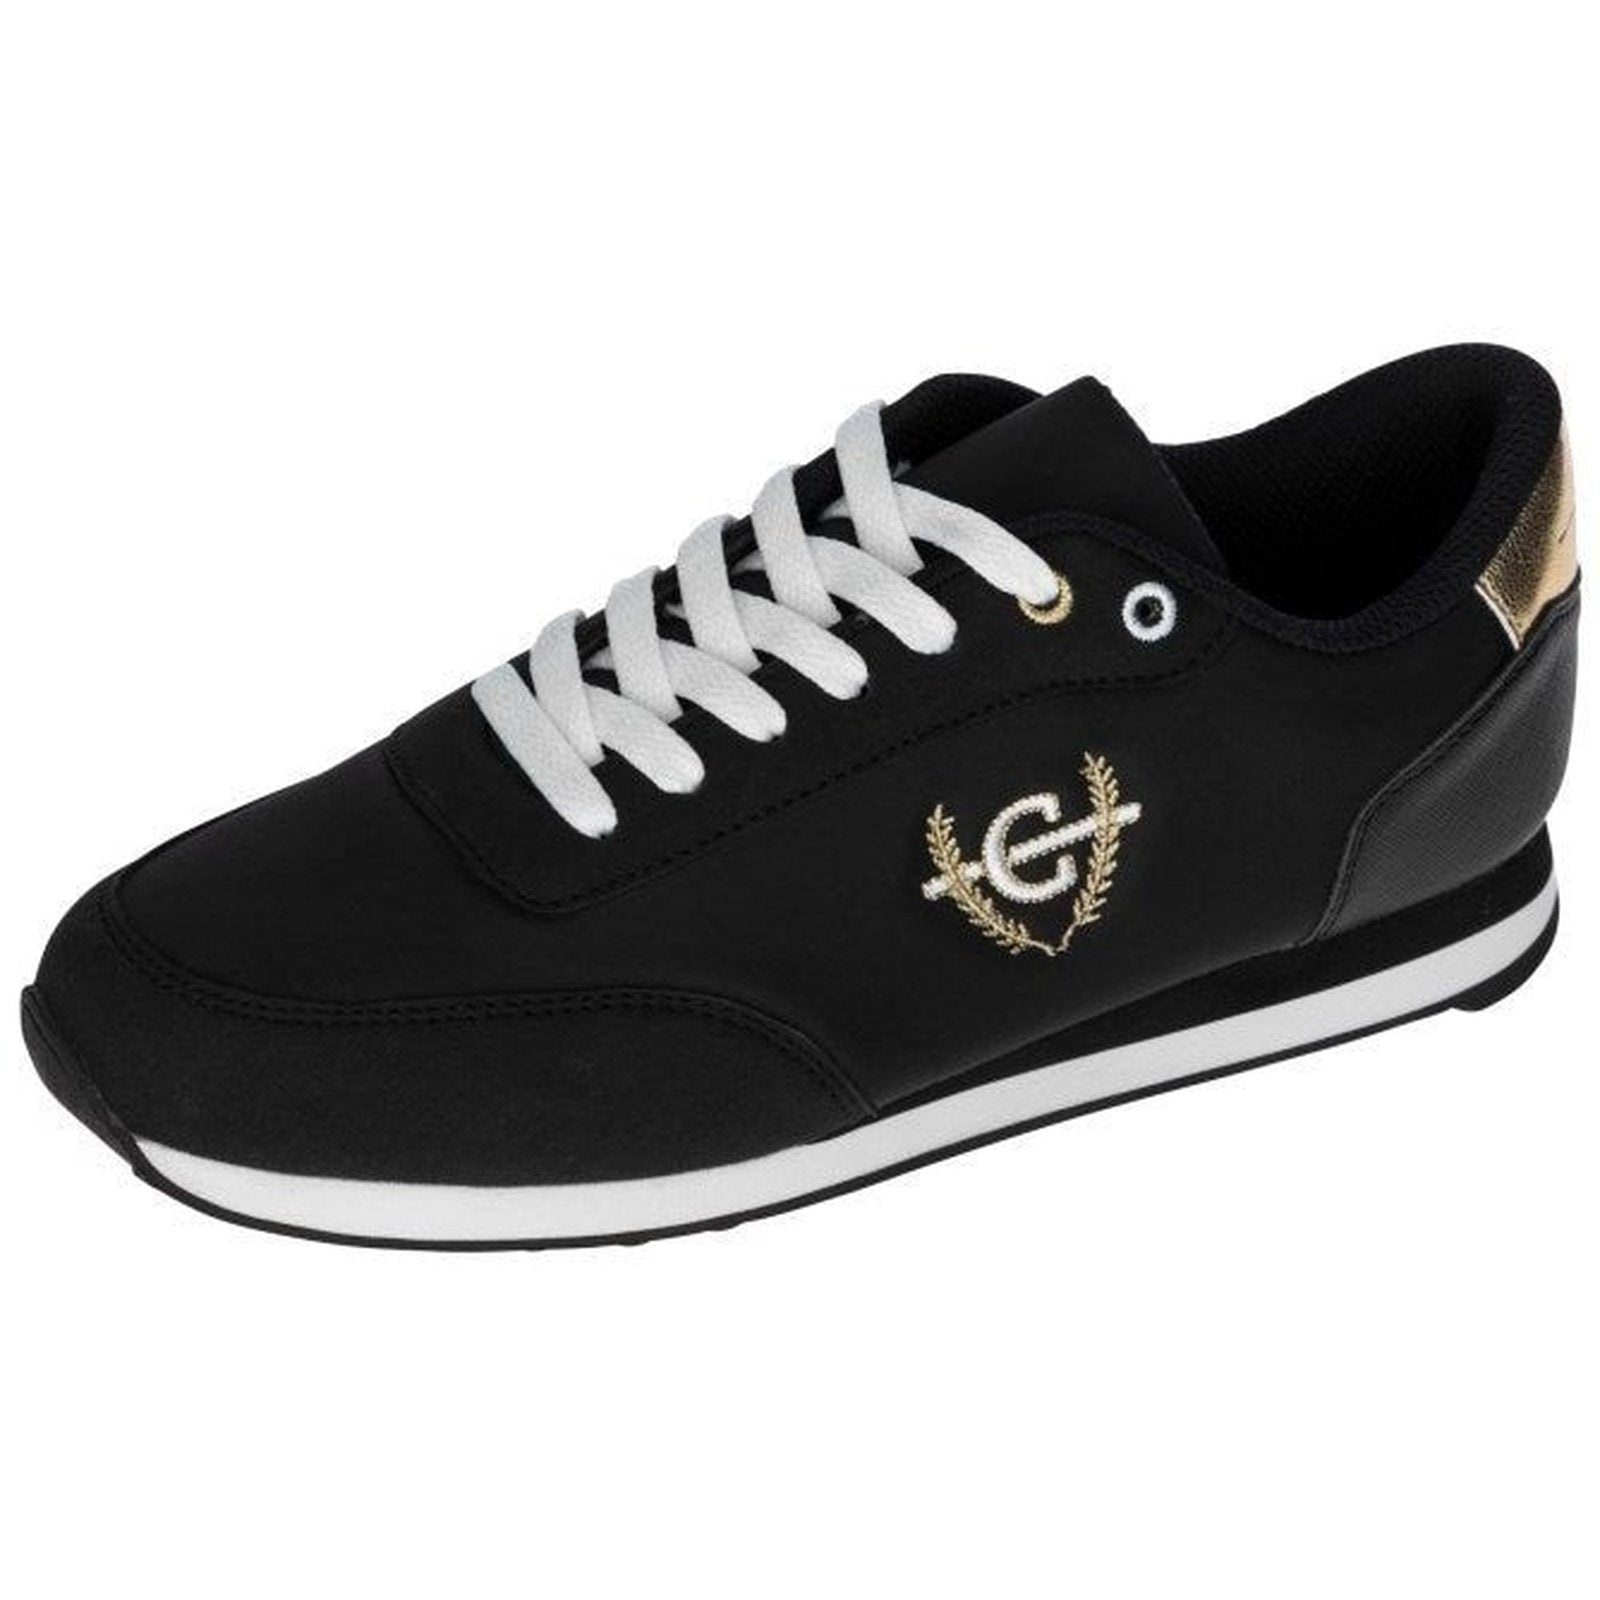 Kerbl Covalliero Sneaker schwarz,weiß,gold 36-41 bei SP-Reitsport Kerbl bei SP-Reitsport